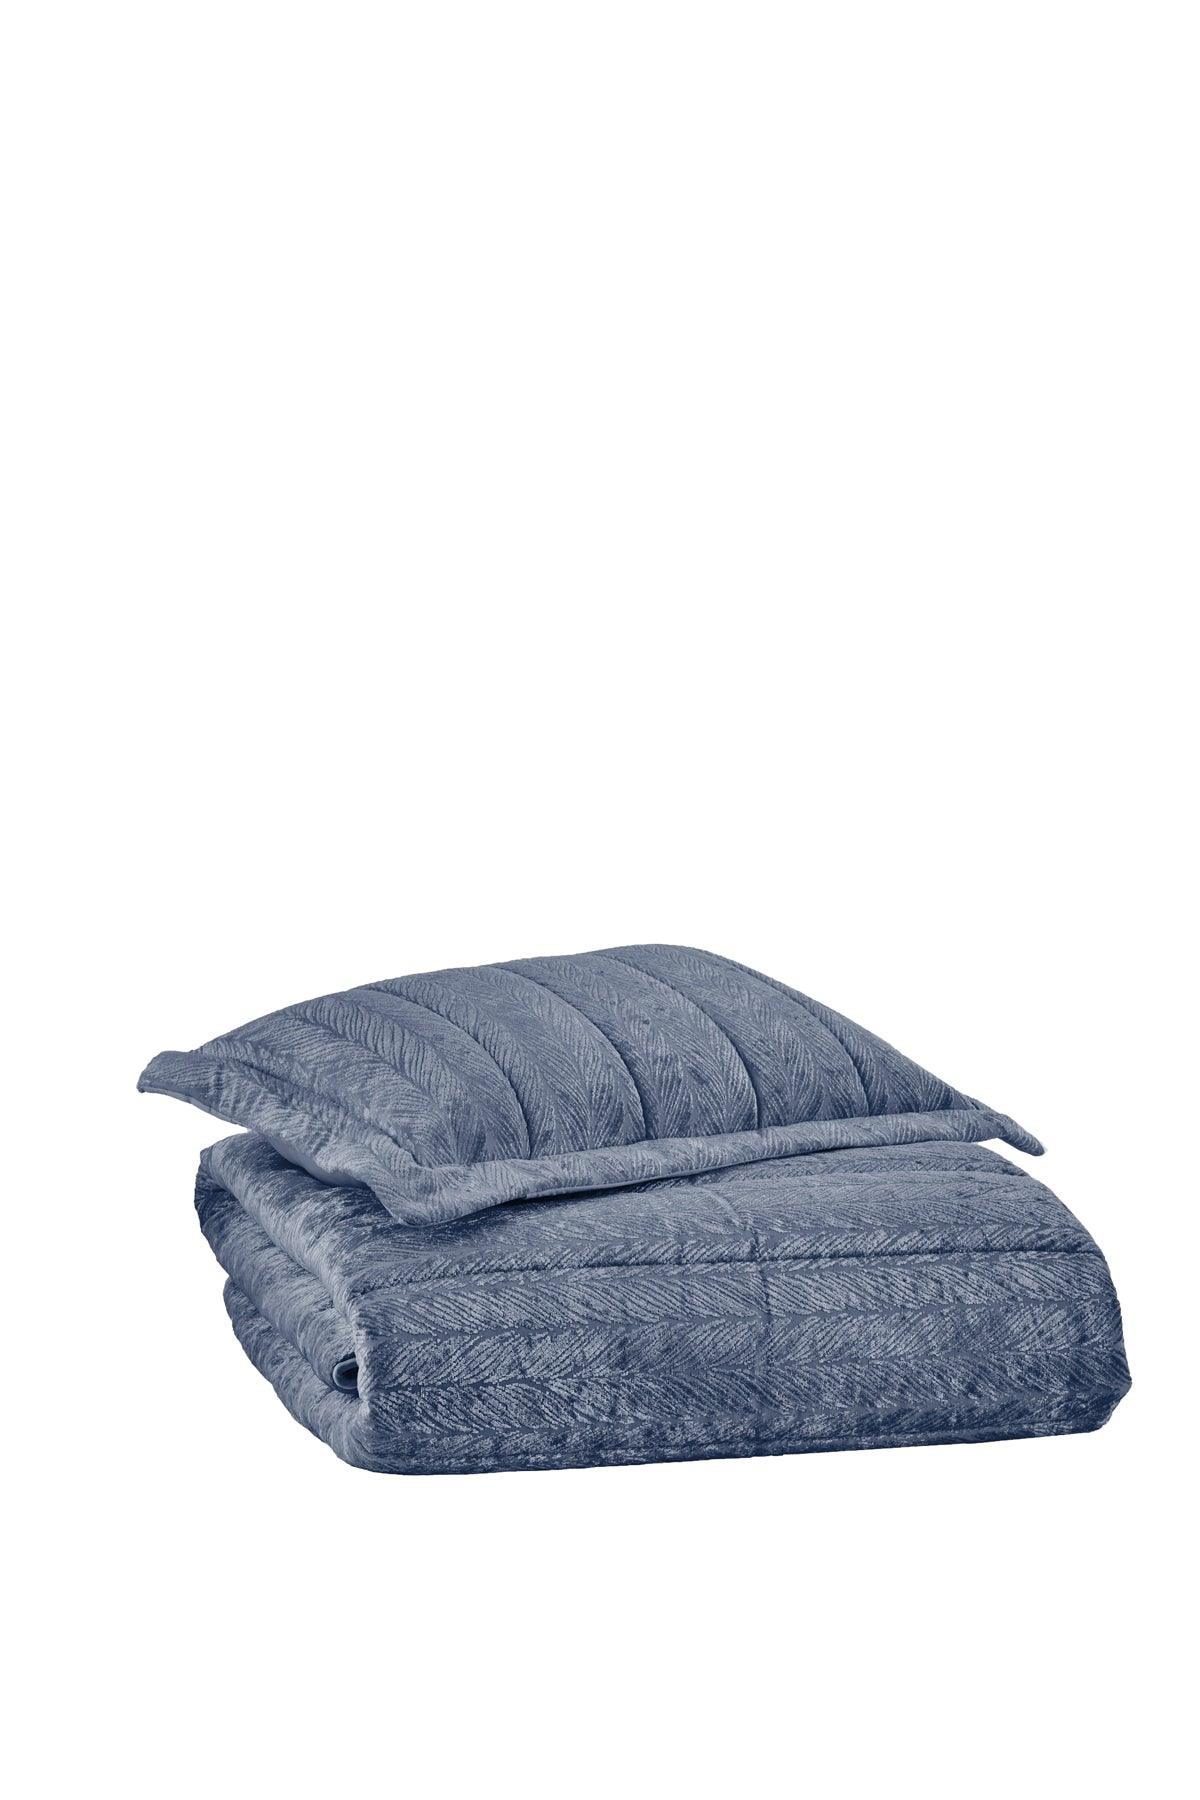 Velvet Kadife Comfort Set Modern Uyku Seti Tek Kişilik Mavi 2 Parça - Elart Home